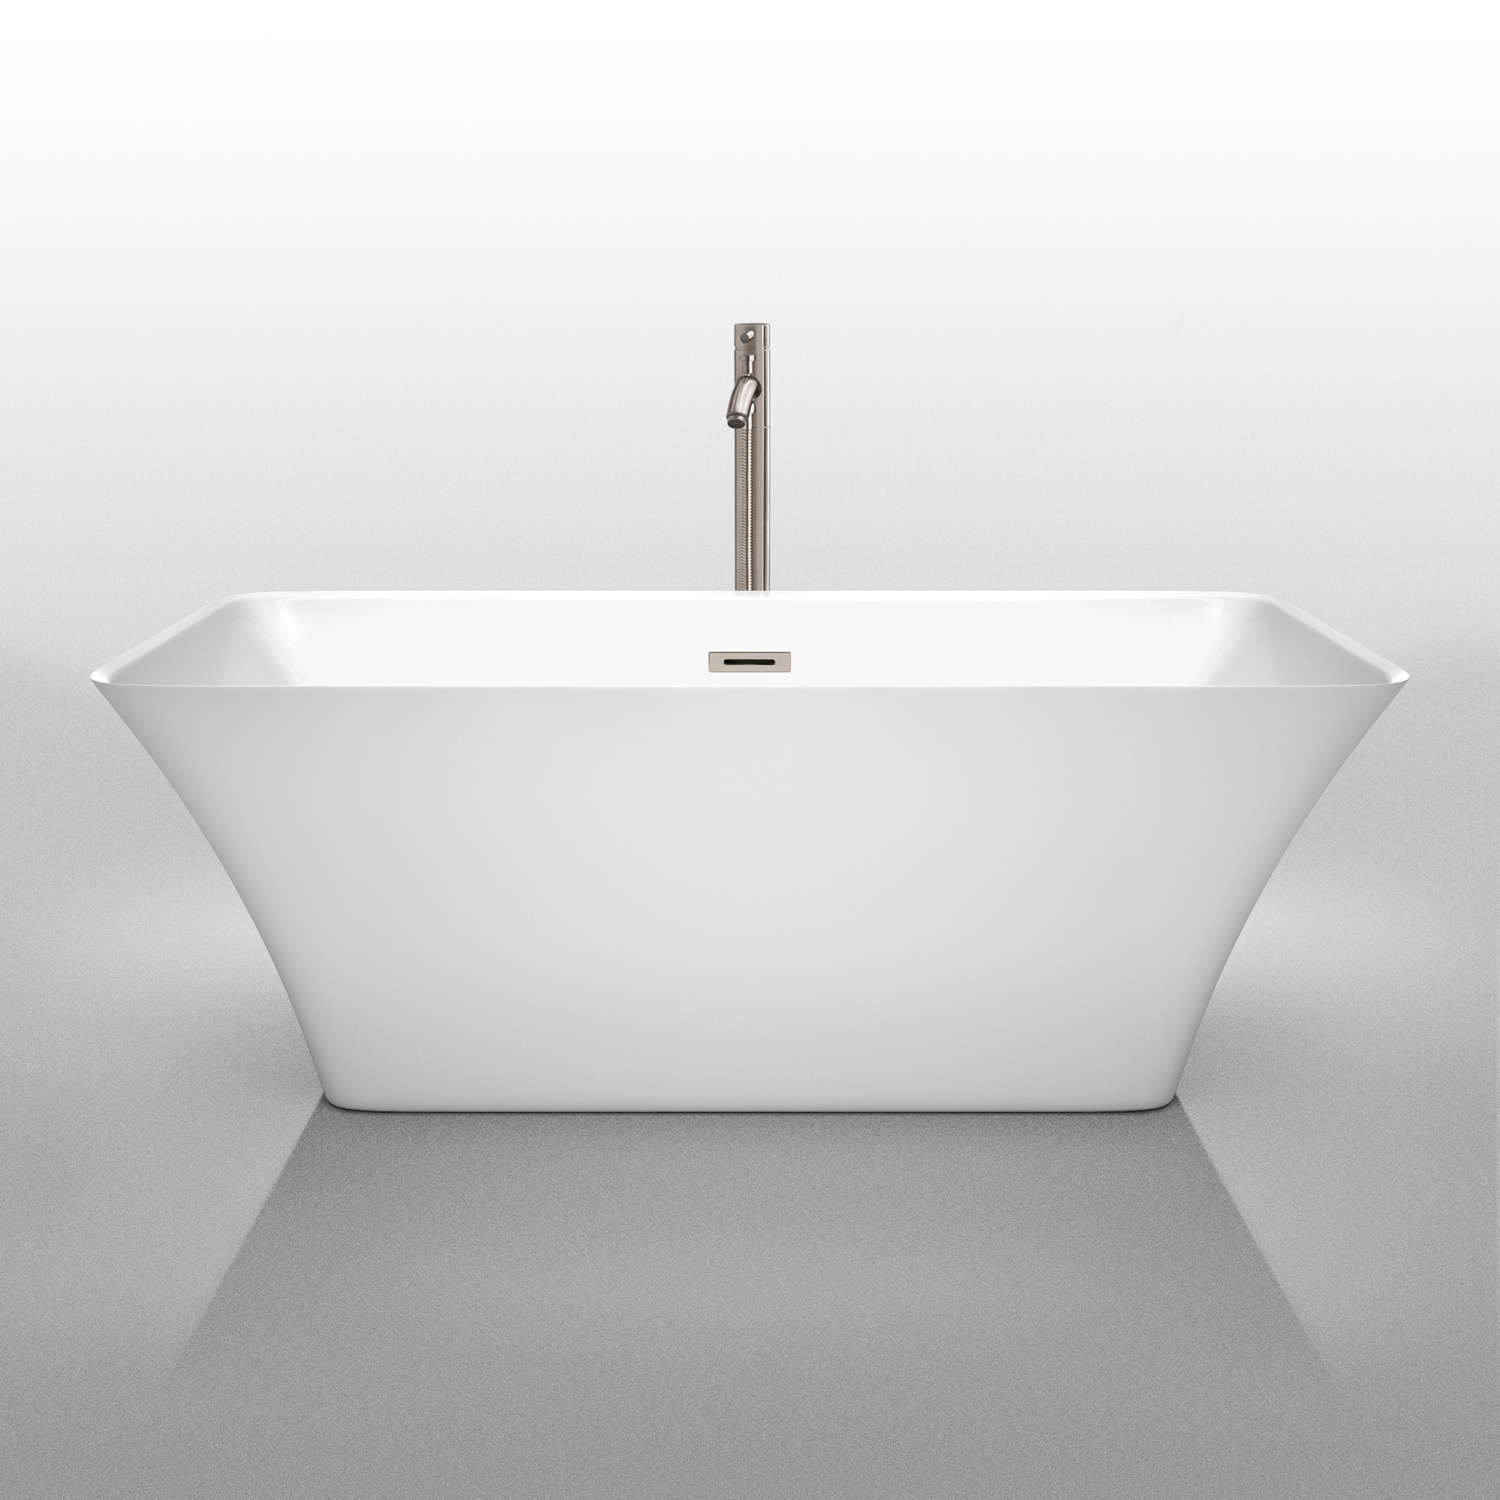 tiffany 59" small soaking bathtub by wyndham collection - white